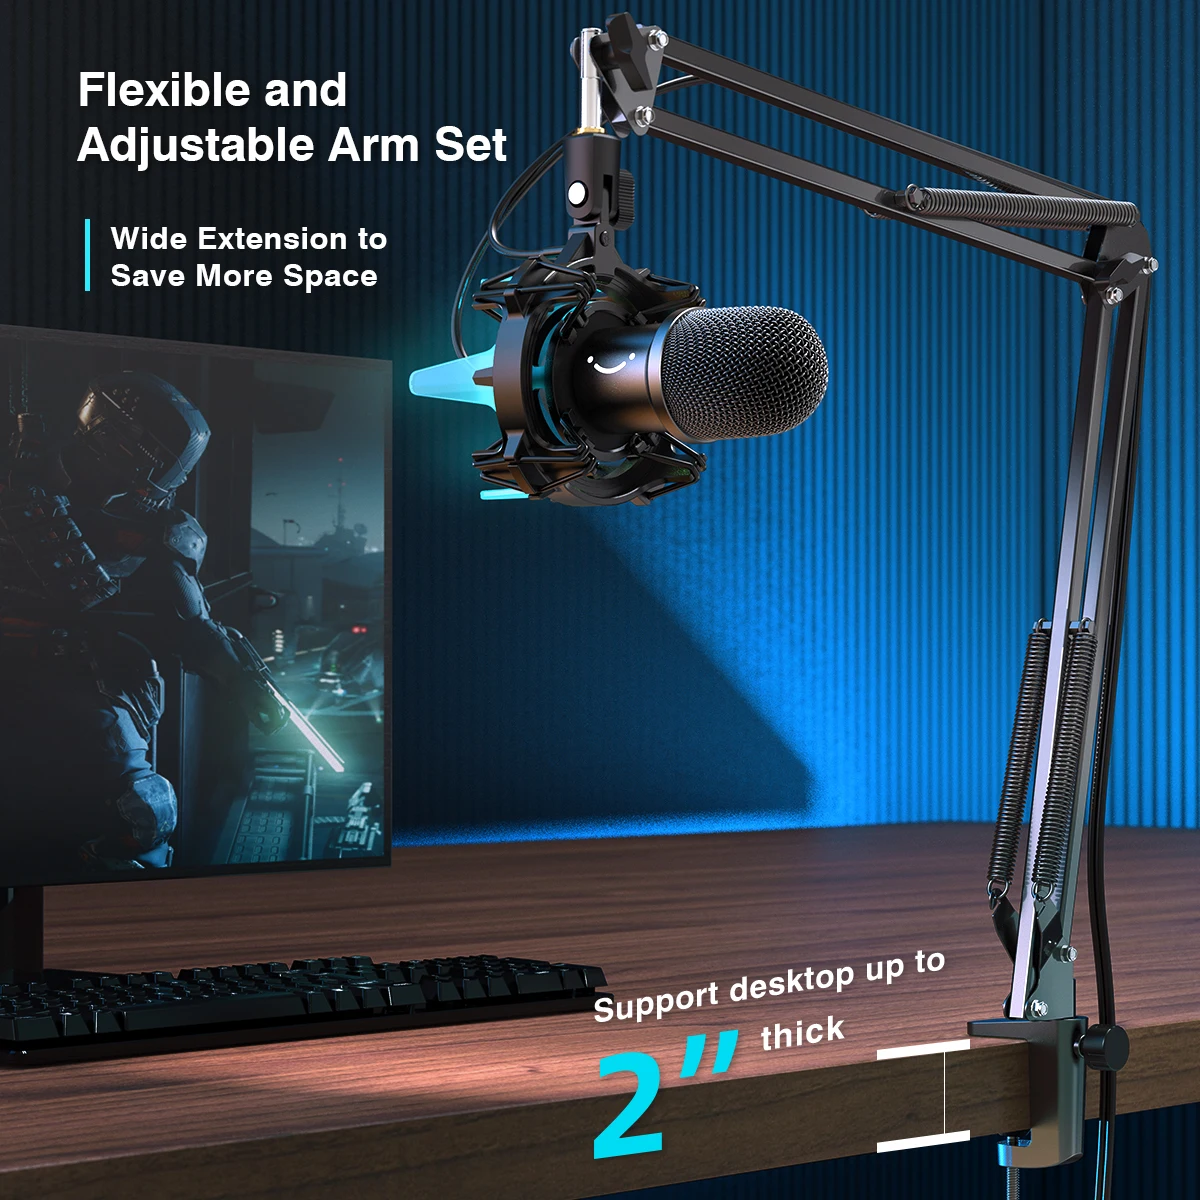 Beroli - Microphone USB FIFINE - PC de jeu avec bras - microphone